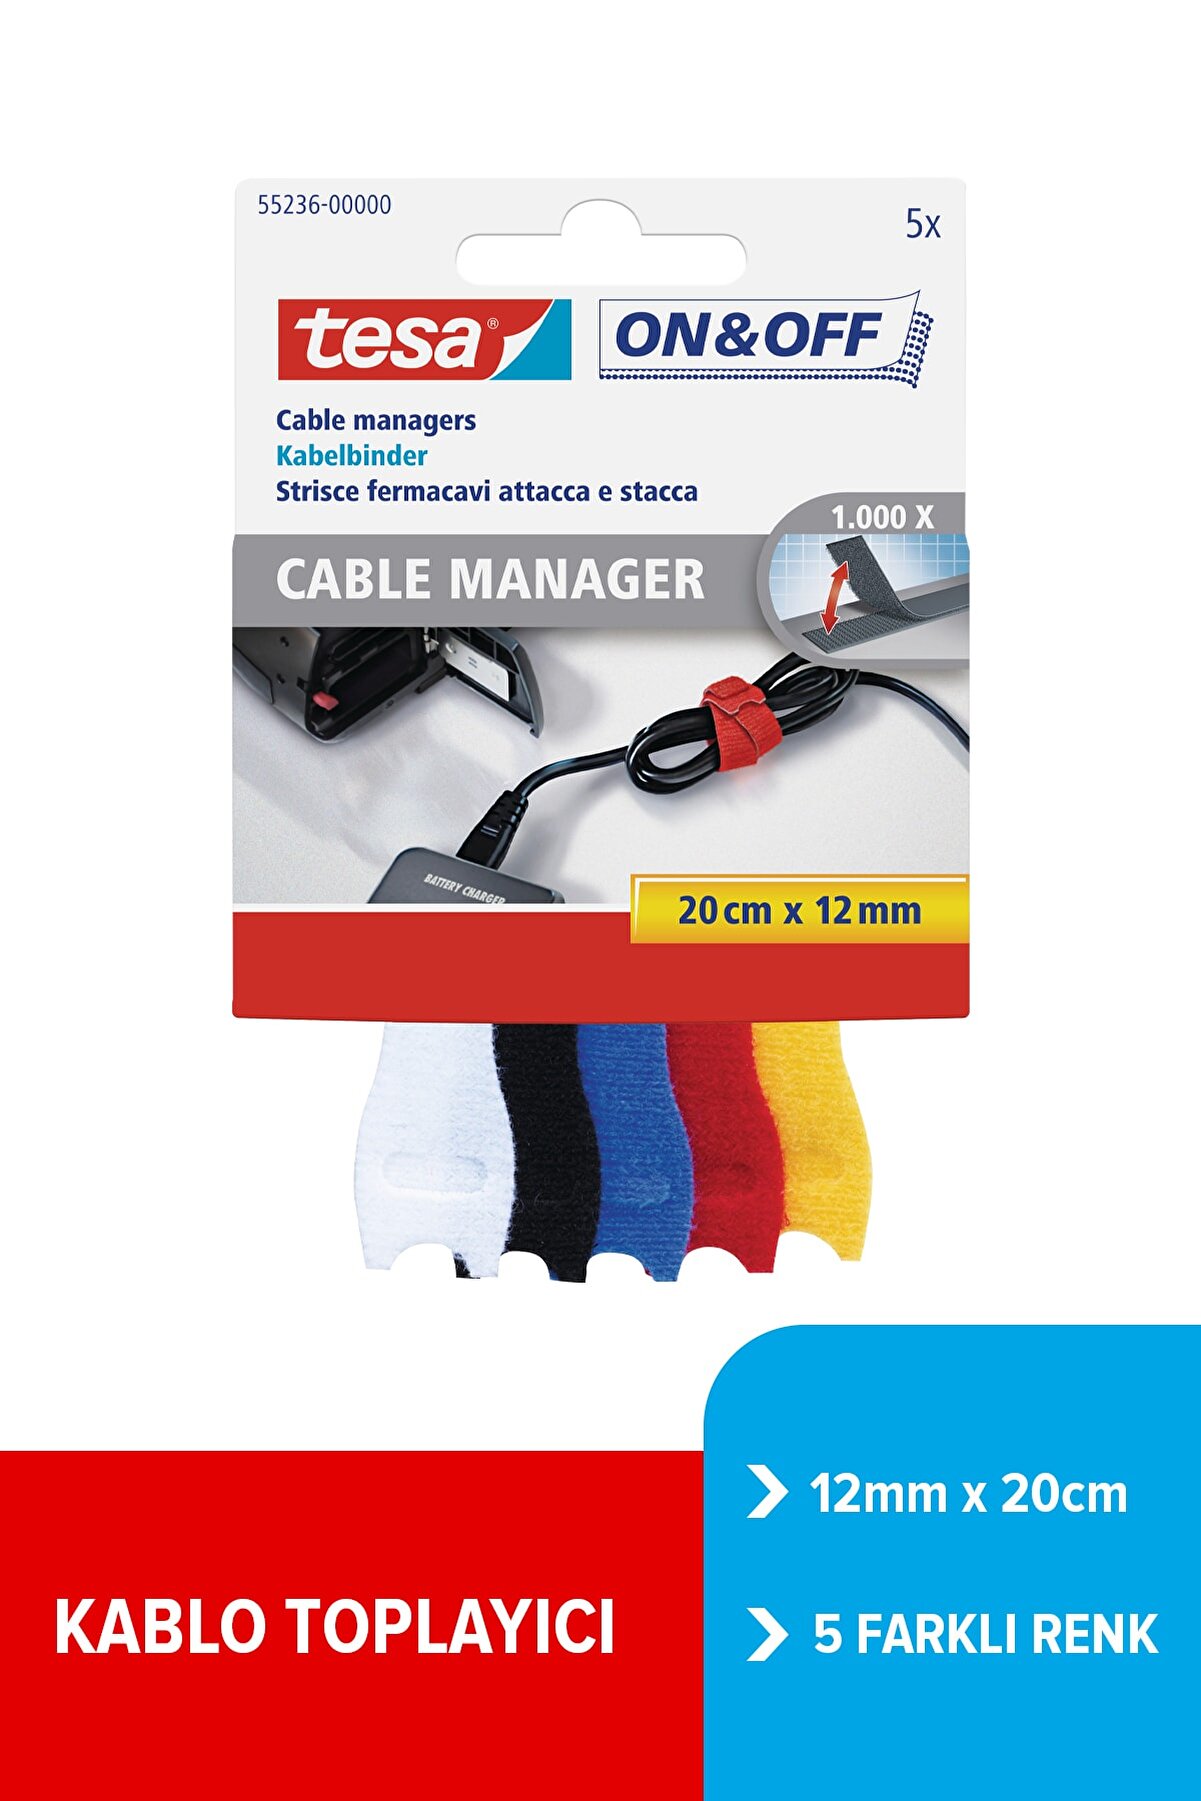 Tesa On & Off Cırt Bant Kablo Toplayıcı, 12mmx20cm, 5 farklı renk: Beyaz, siyah, mavi, kırmızı, sarı